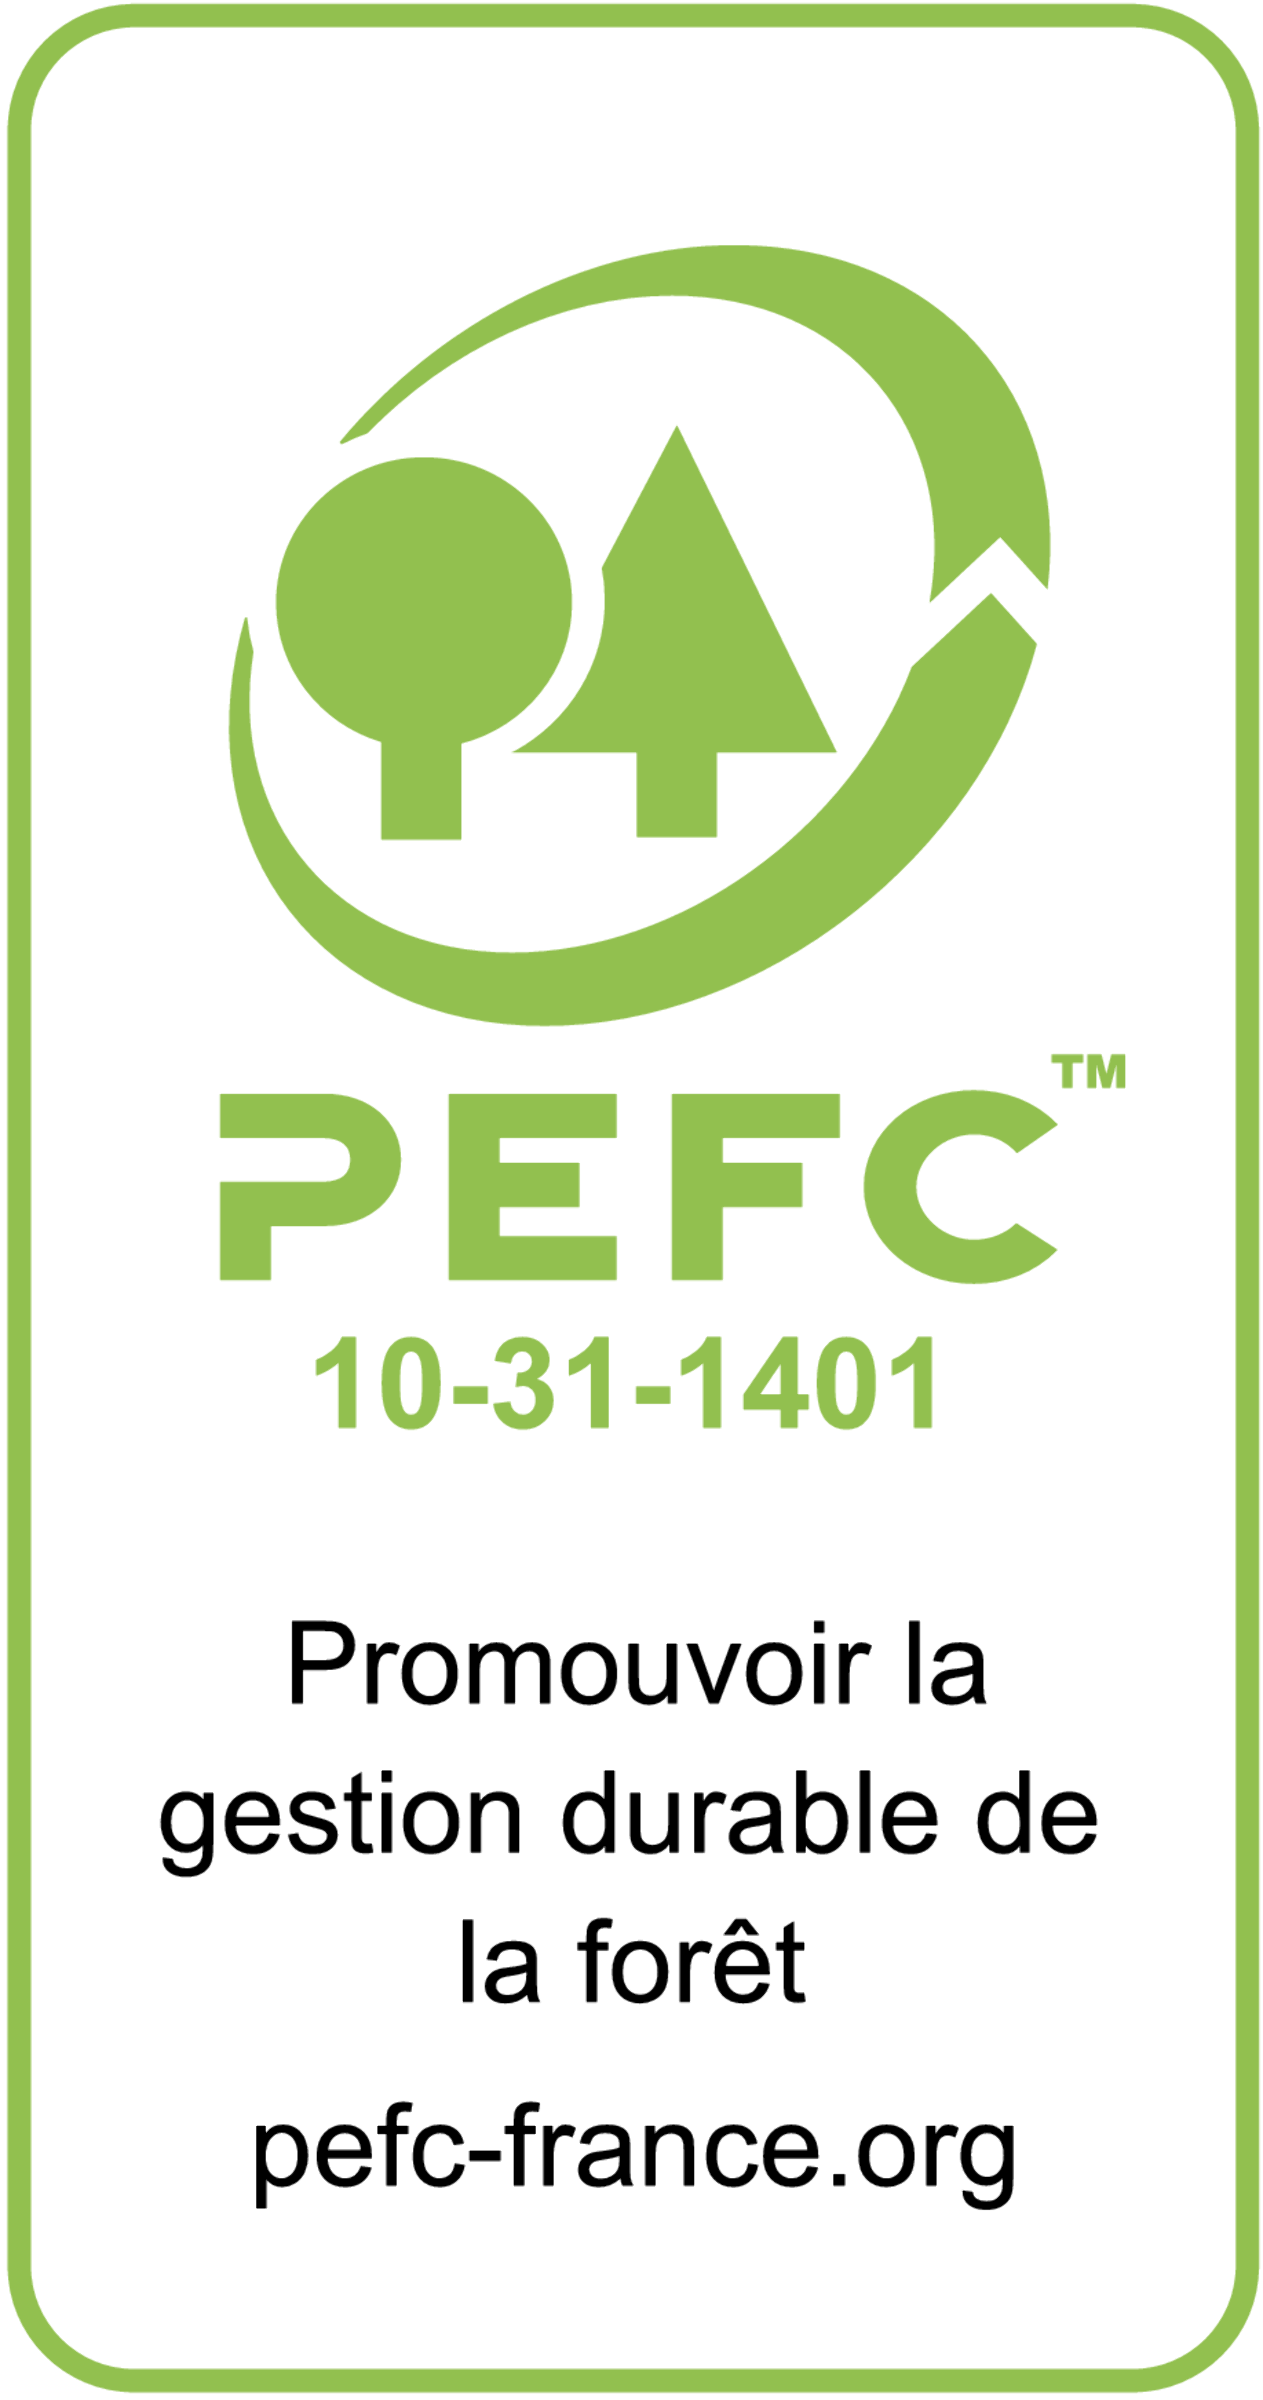 pefc-logo.png